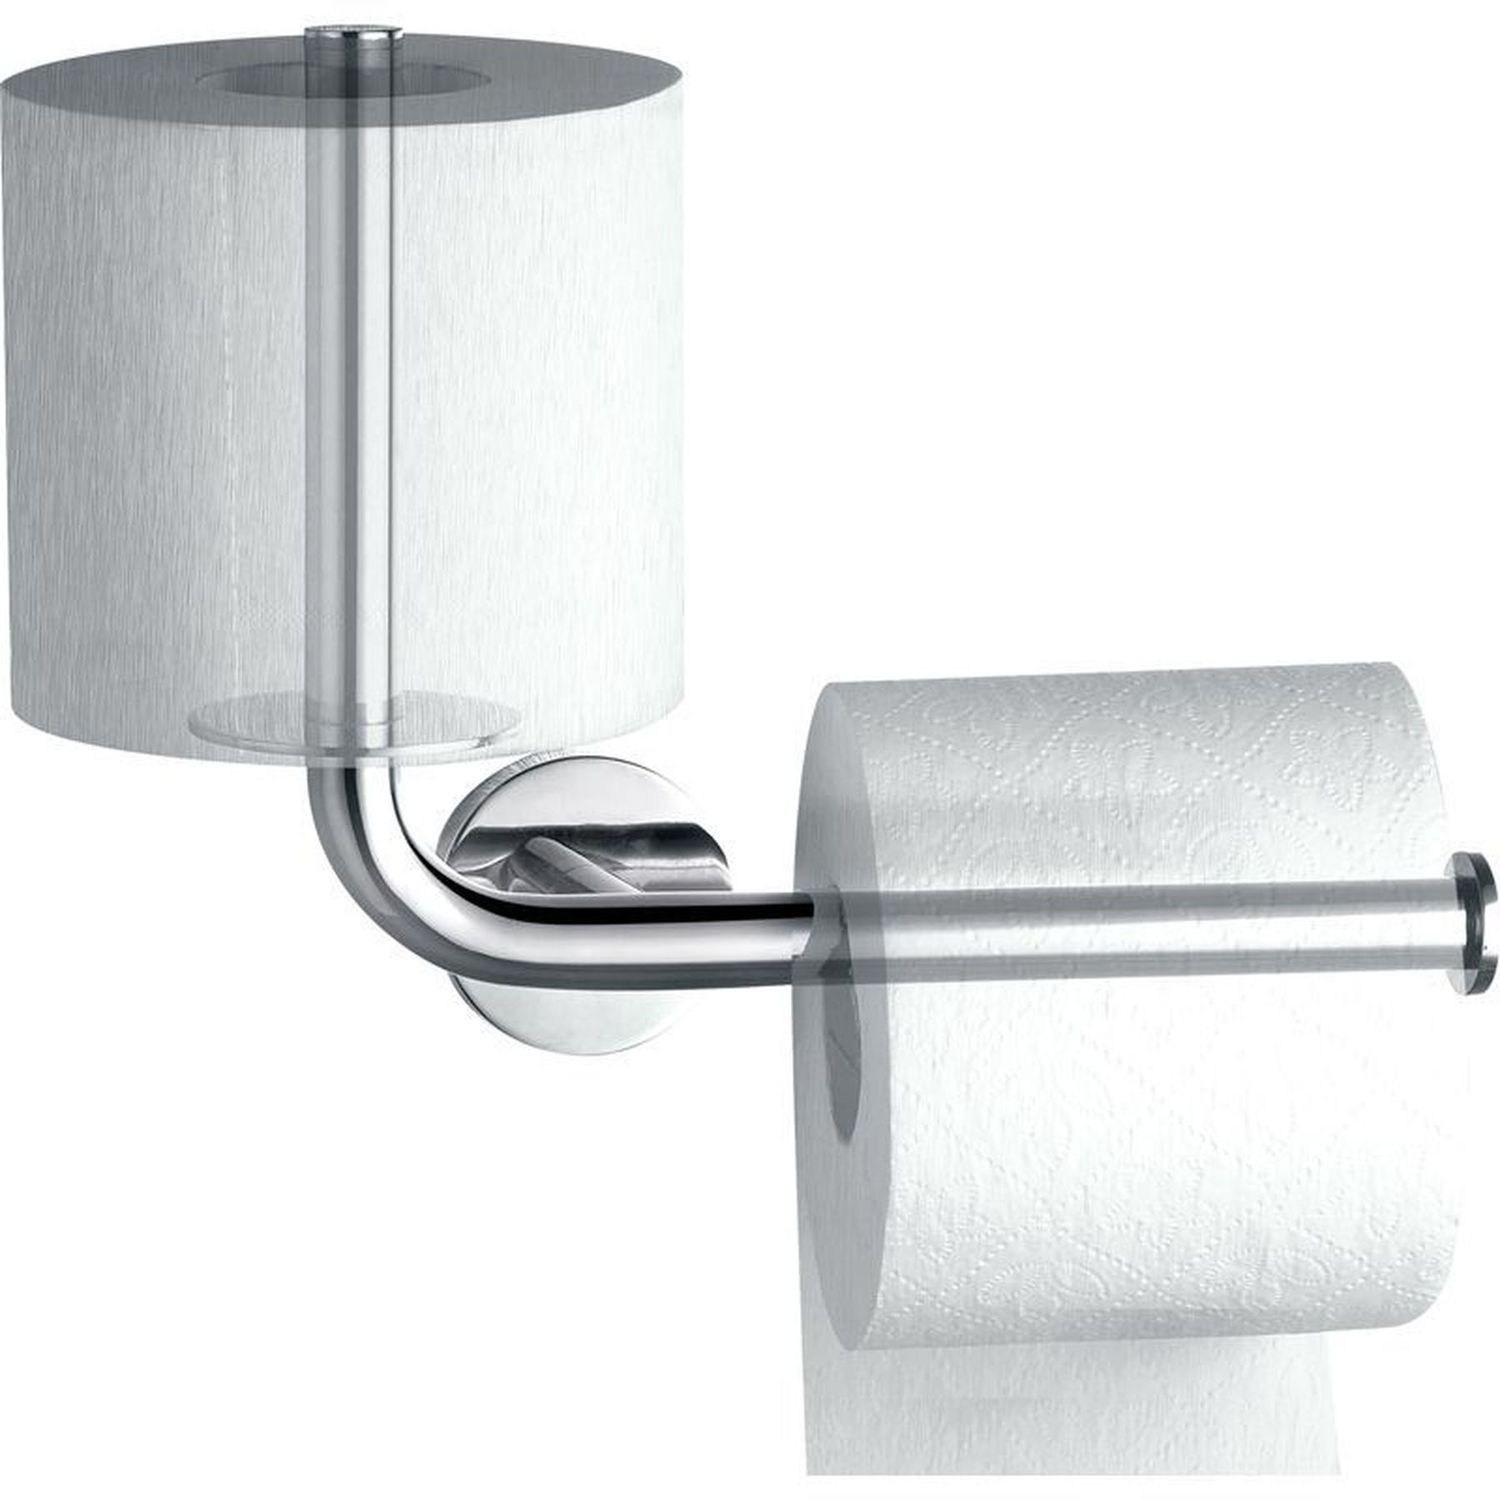 Держатель для туалетной бумаги Perfect sanitary appliances Globus Lux SP 8146